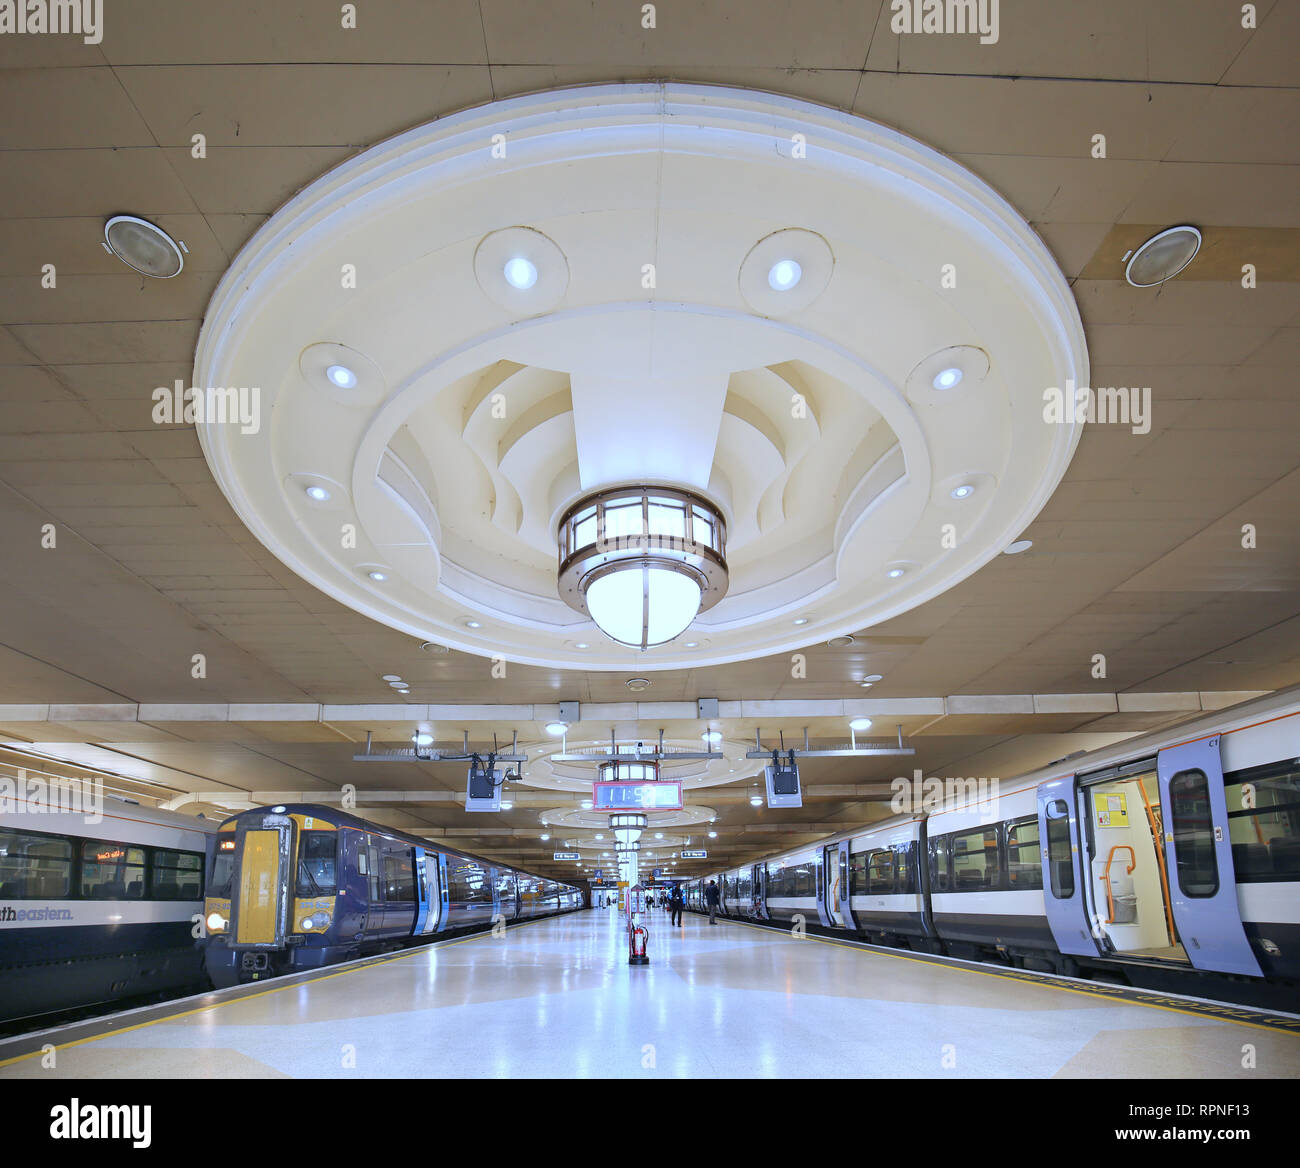 La plate-forme à la London Charing Cross station ferroviaire montrant le plafond avec éclairage de style art déco est installé au cours des années 1990 à la reconstruction. Banque D'Images